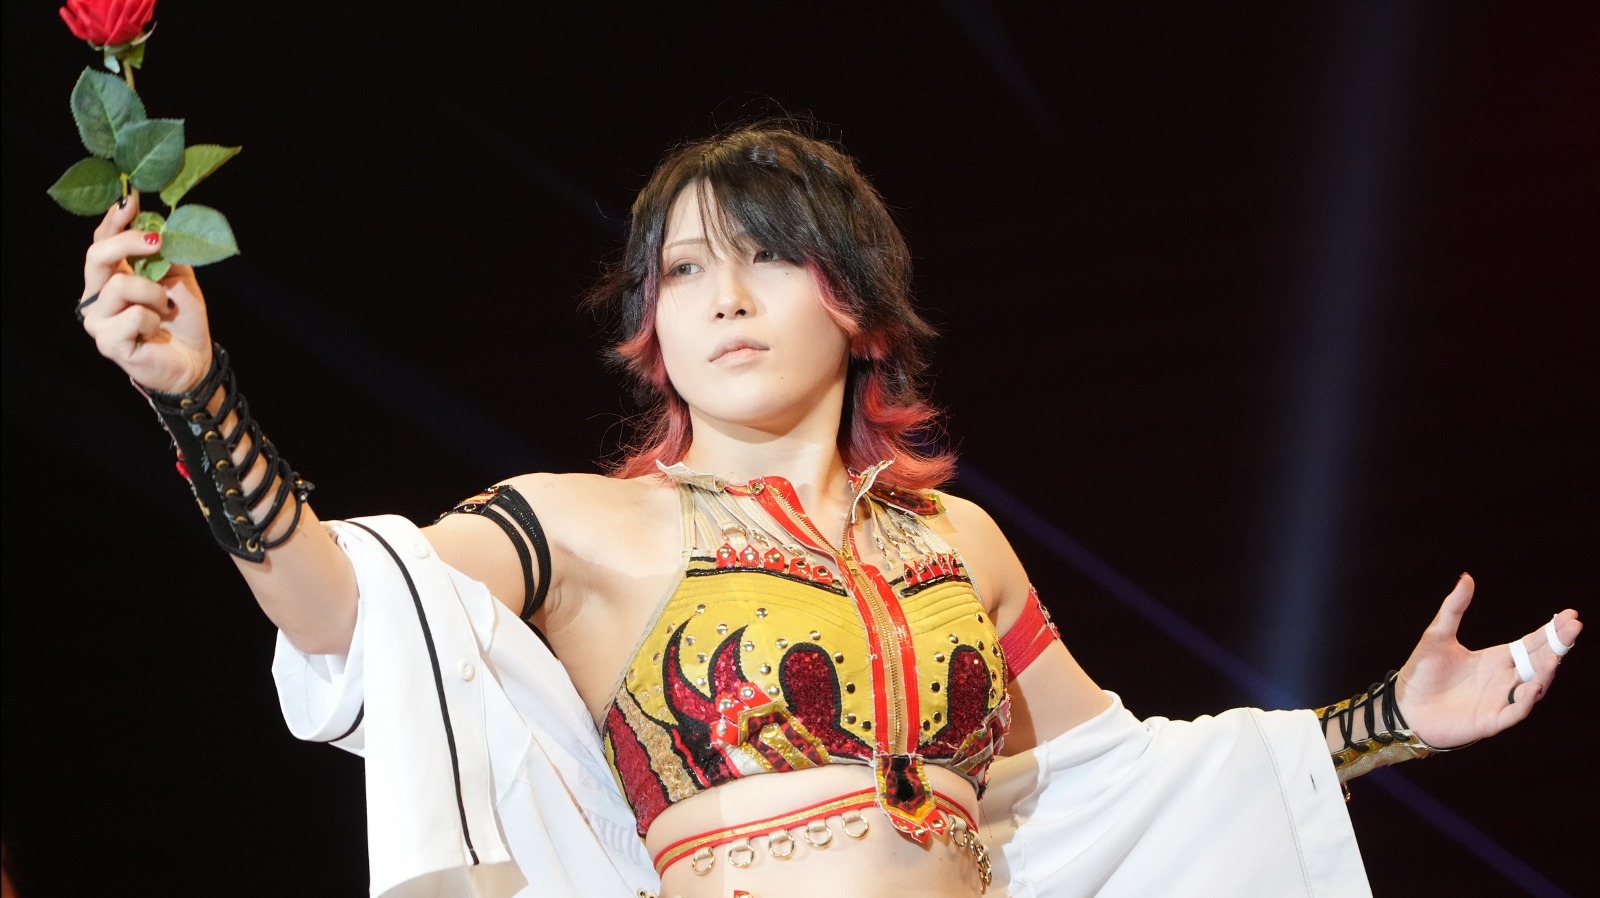 La estrella de Stardom Utami Hayashishita hará su debut en GCW